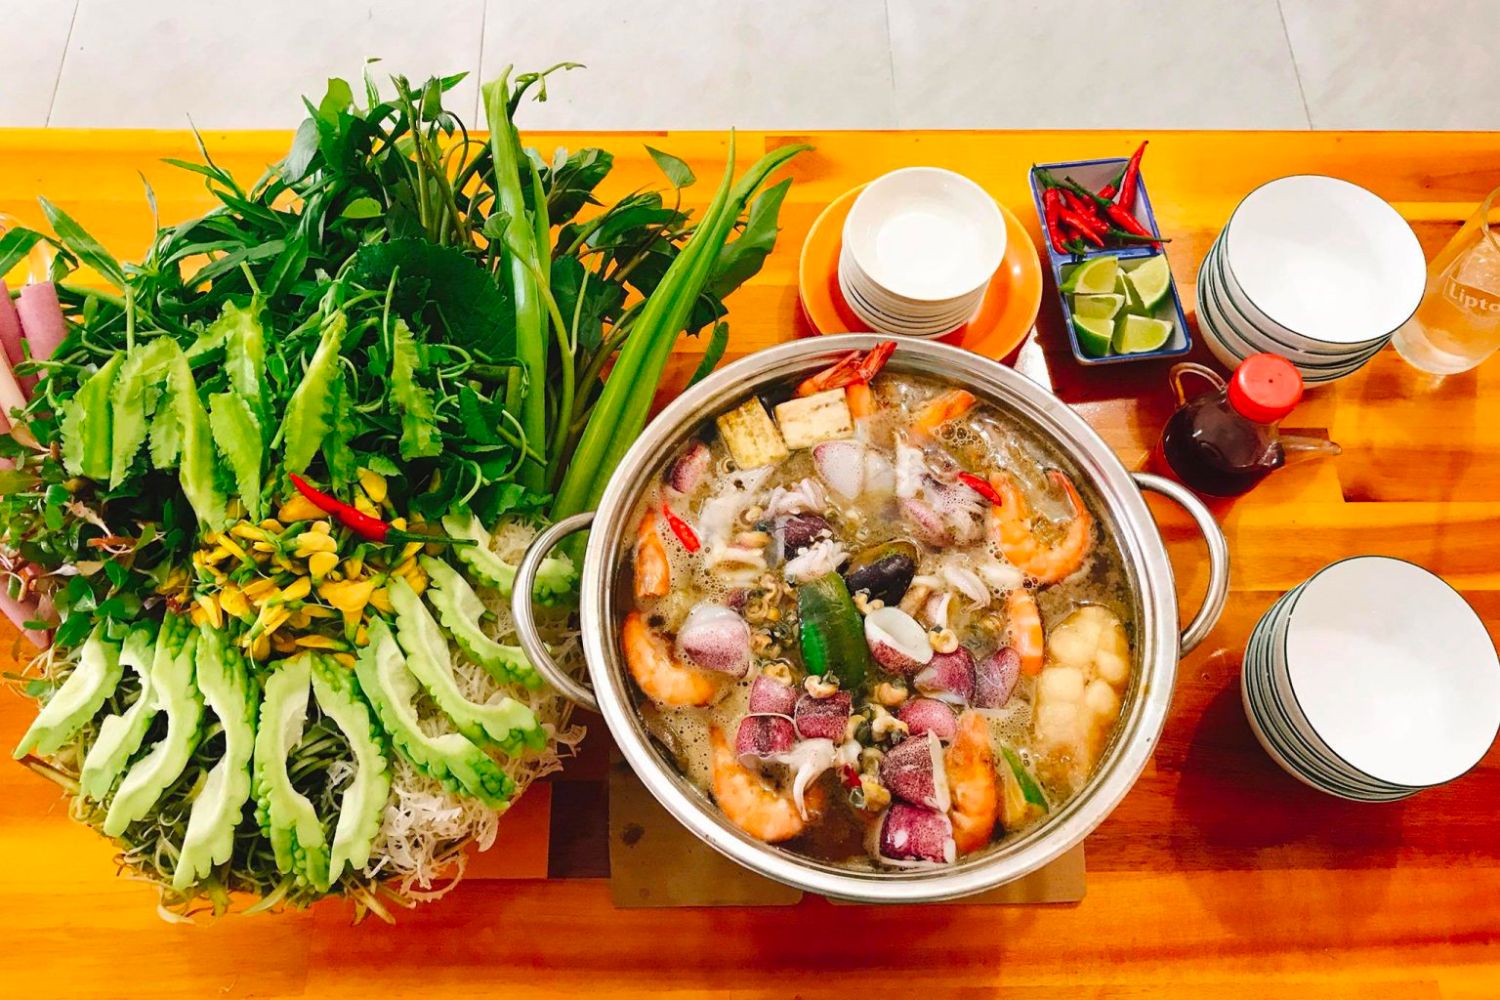 Lẩu mắm An Giang, món ăn đại diện cho nền ẩm thực miền đất Tây Nam 5